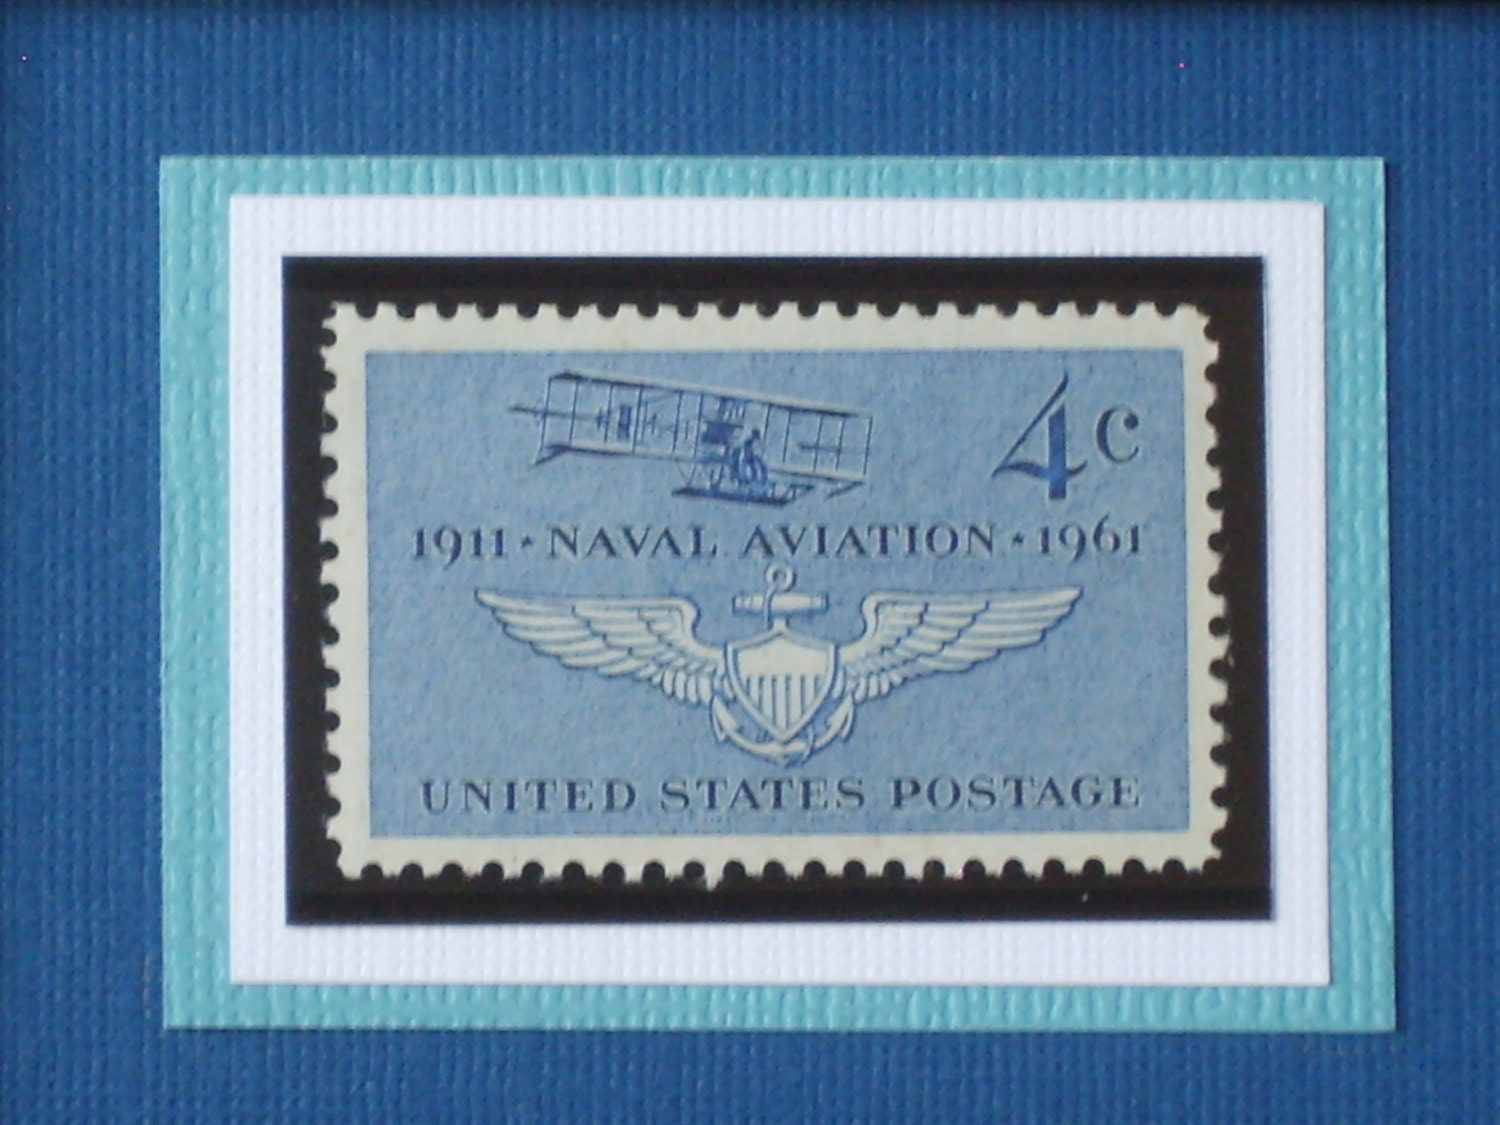 Naval Aviation - Vintage Framed Postage Stamp - No. 1185 - RedBeansnRice